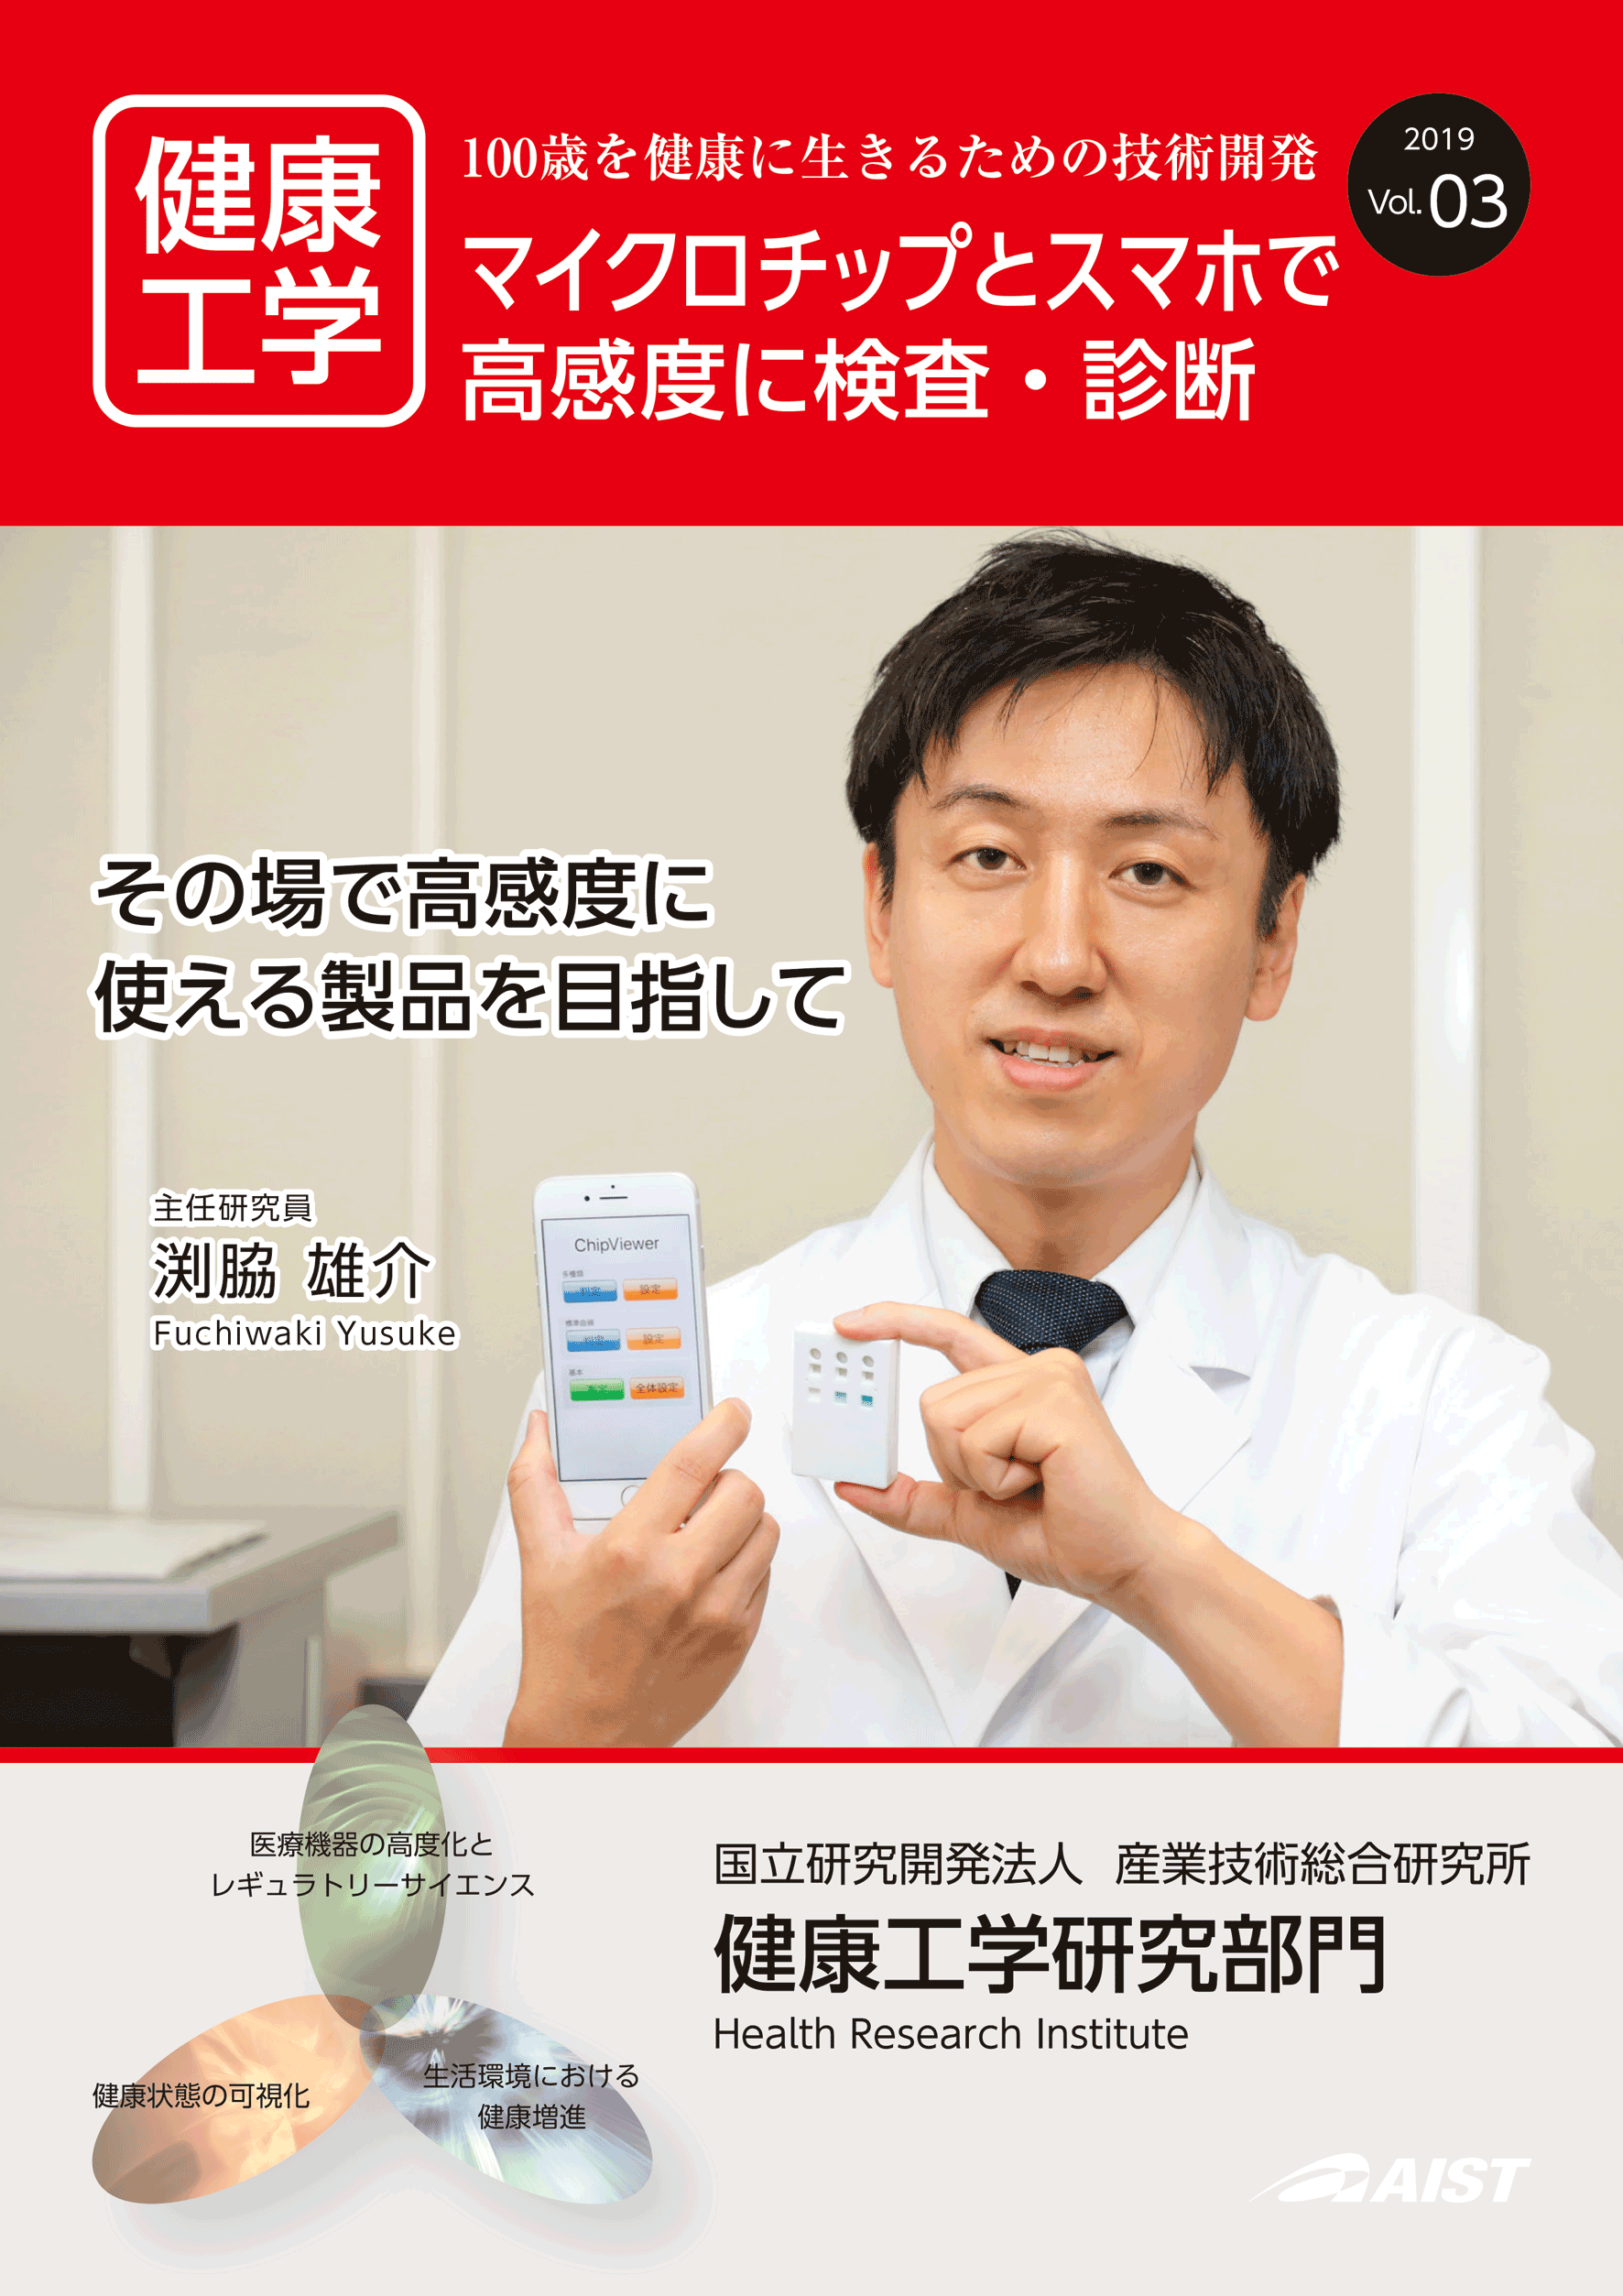 表紙:その場で高感度に使える製品を目指して。バイオセンシング研究グループ 渕脇　雄介 主任研究員の研究を特集しています。